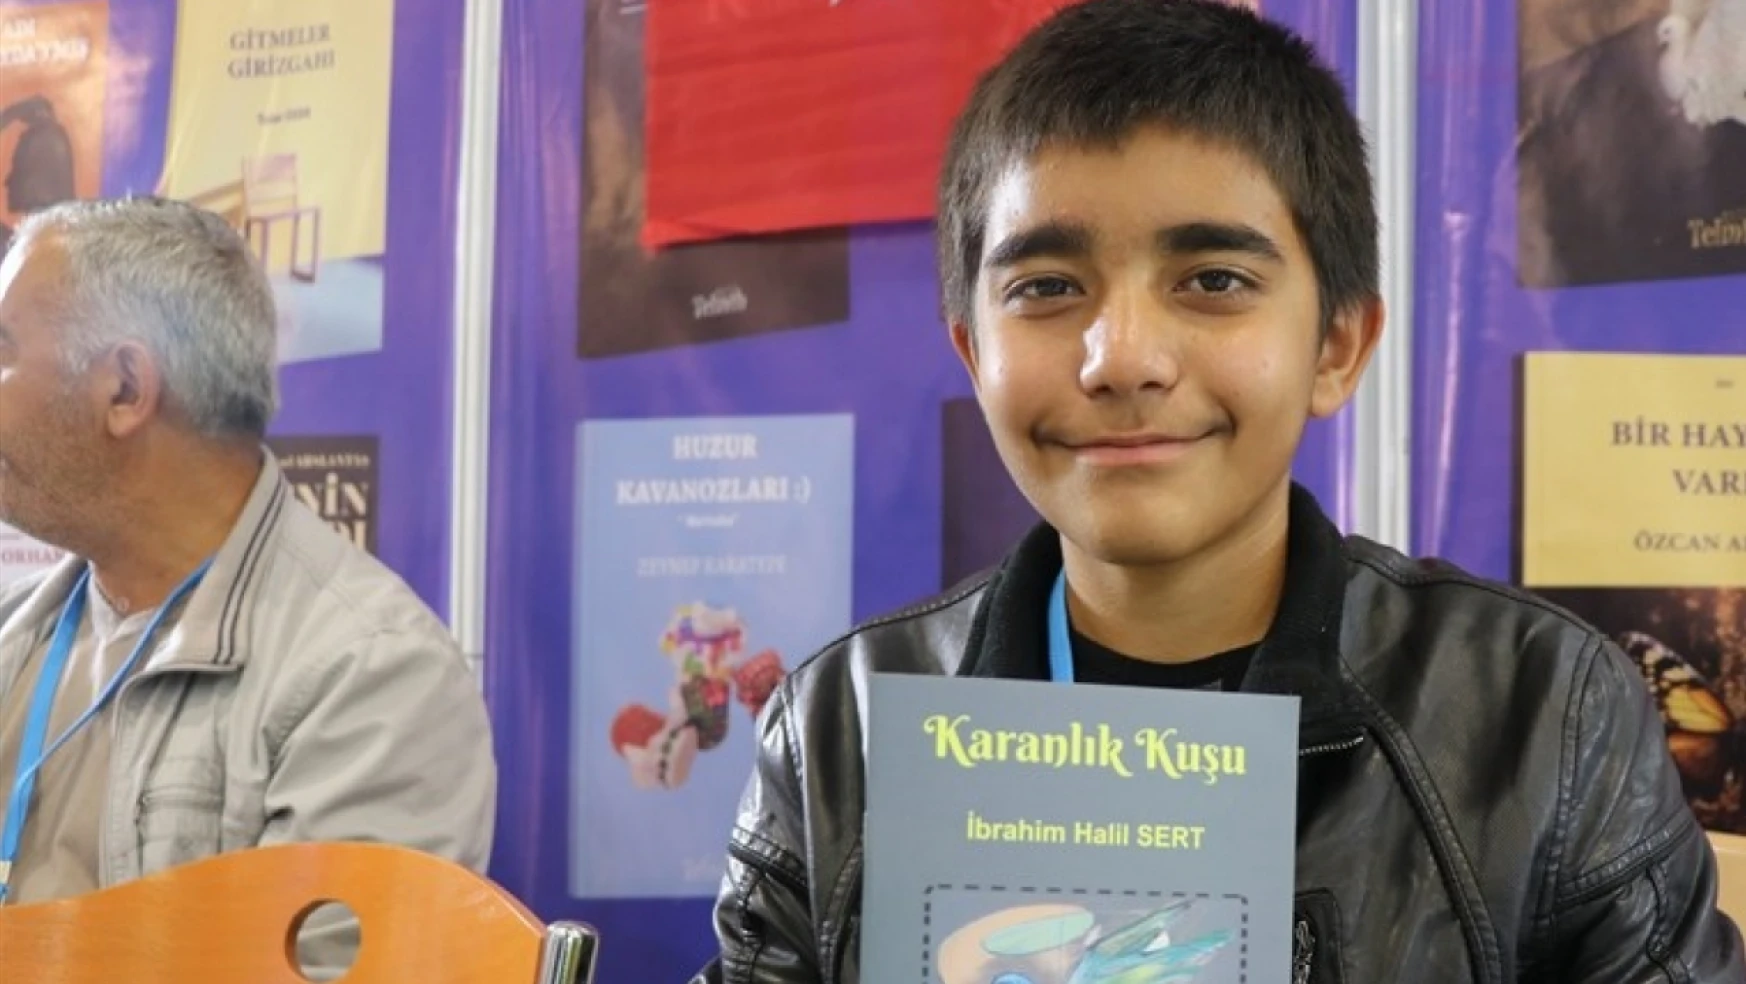 Depremzede 13 yaşındaki çocuk çadır kentte yazdığı kitabı, Elazığ'daki fuarda imzaladı